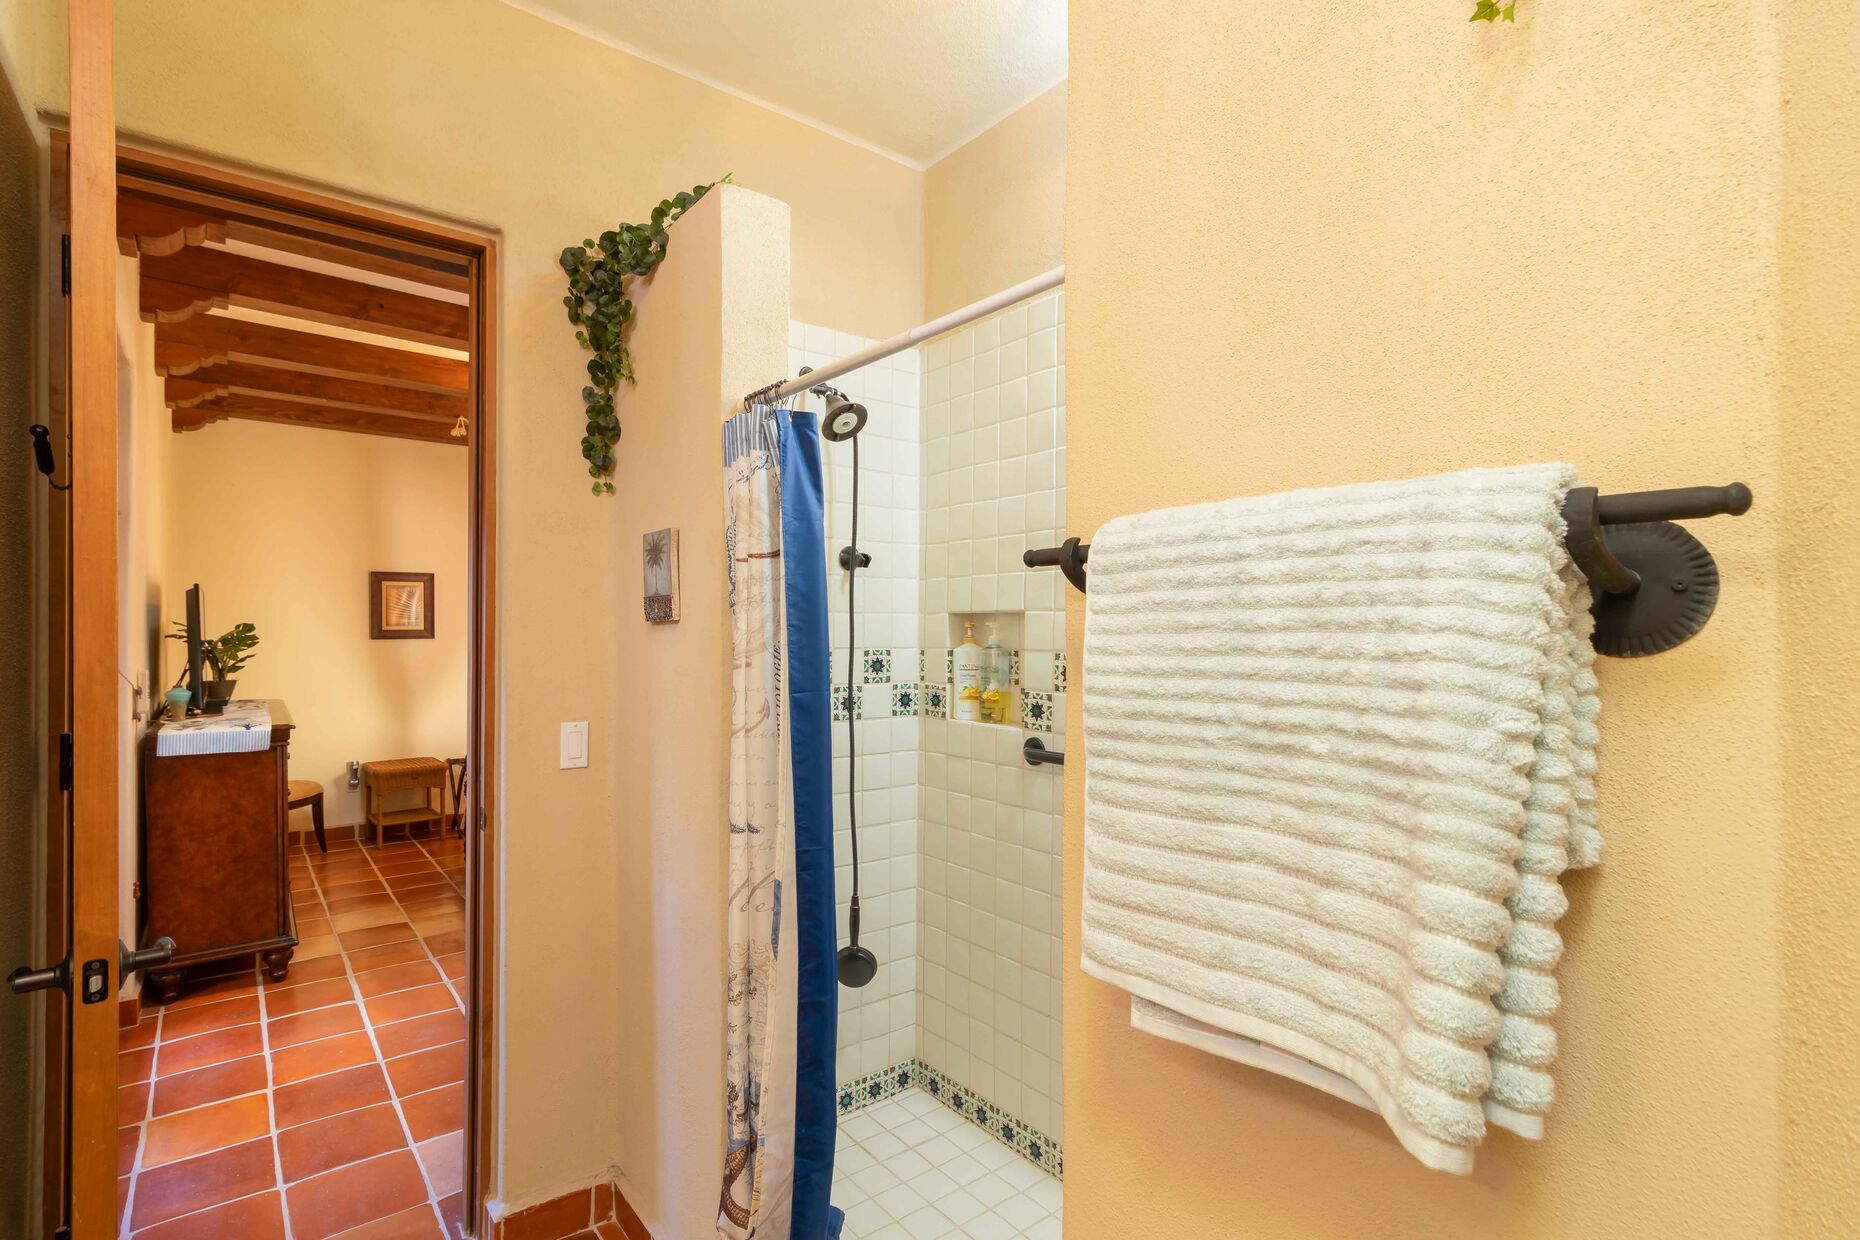 Full Downstairs Bathroom / Vanity Mirror / Shower/ Beach Towels